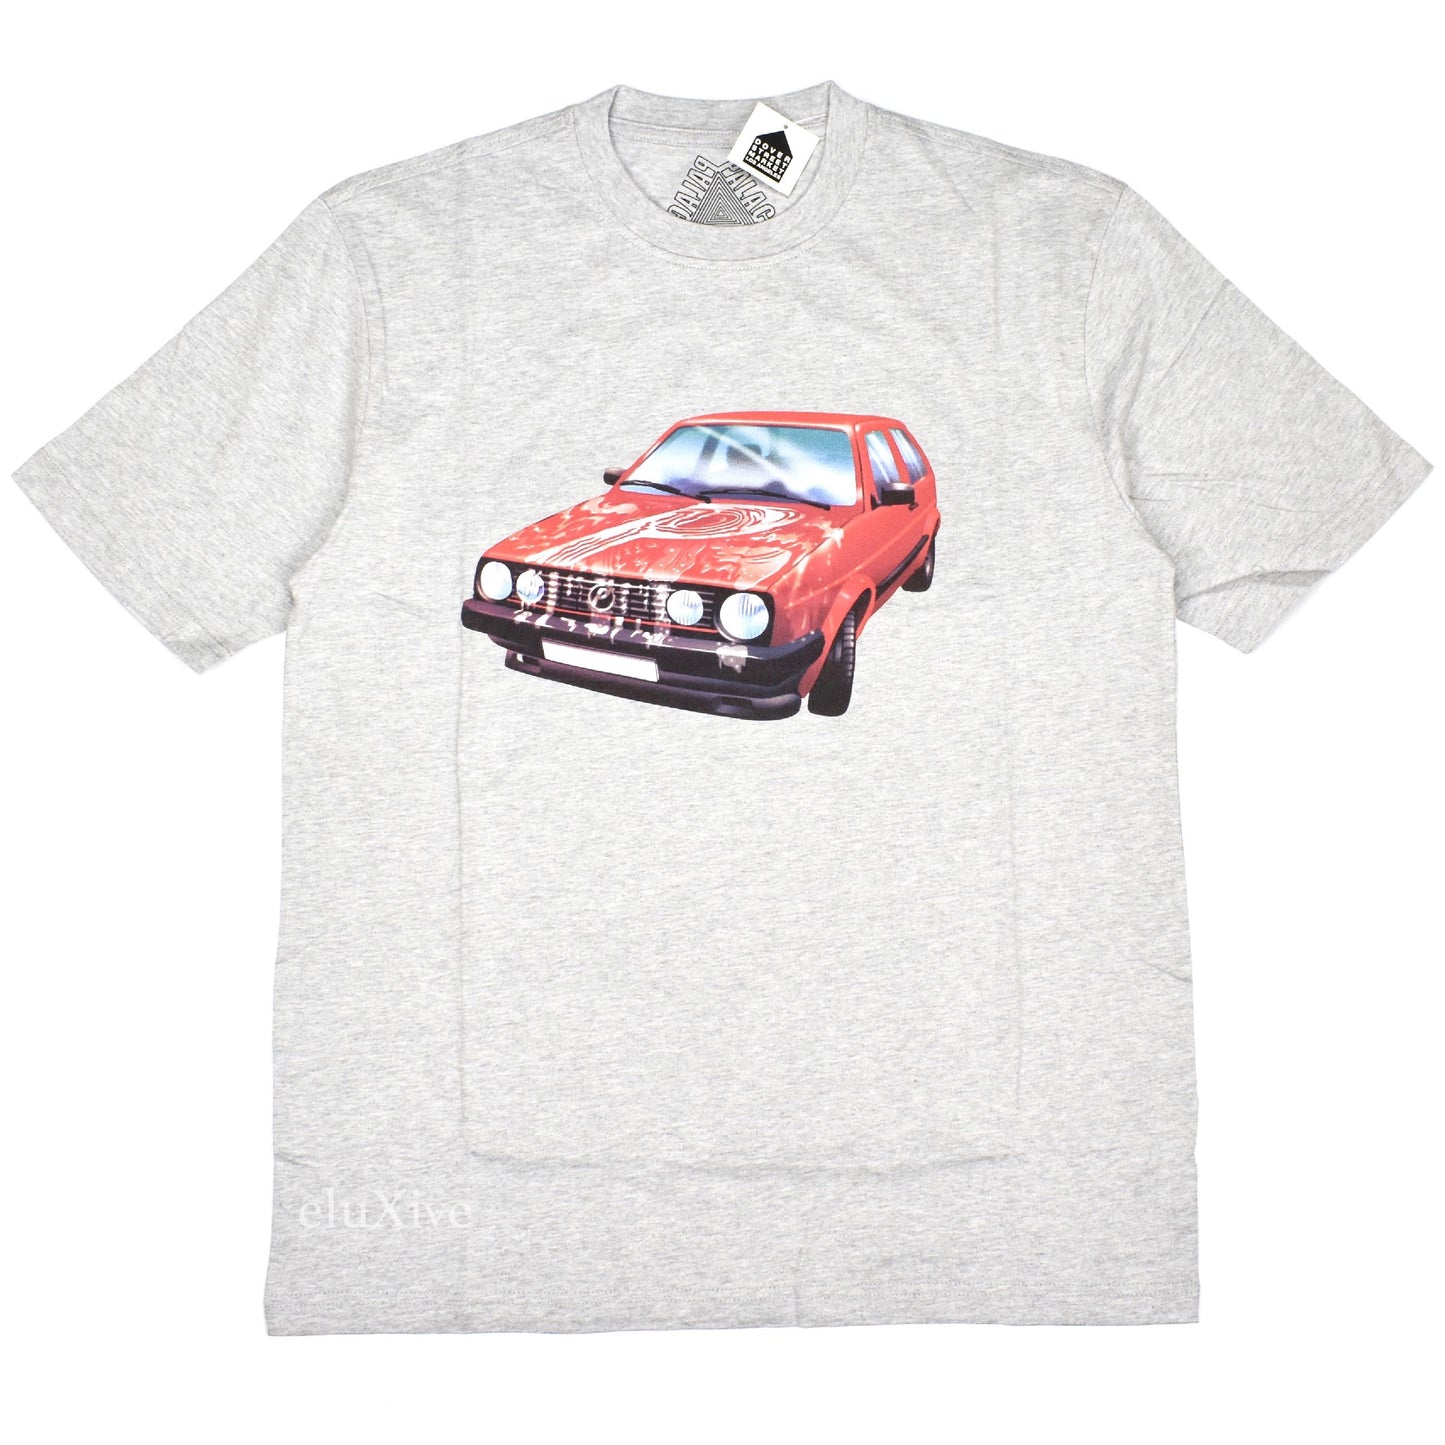 Palace - GT Aiight Car Logo T-Shirt (Gray)